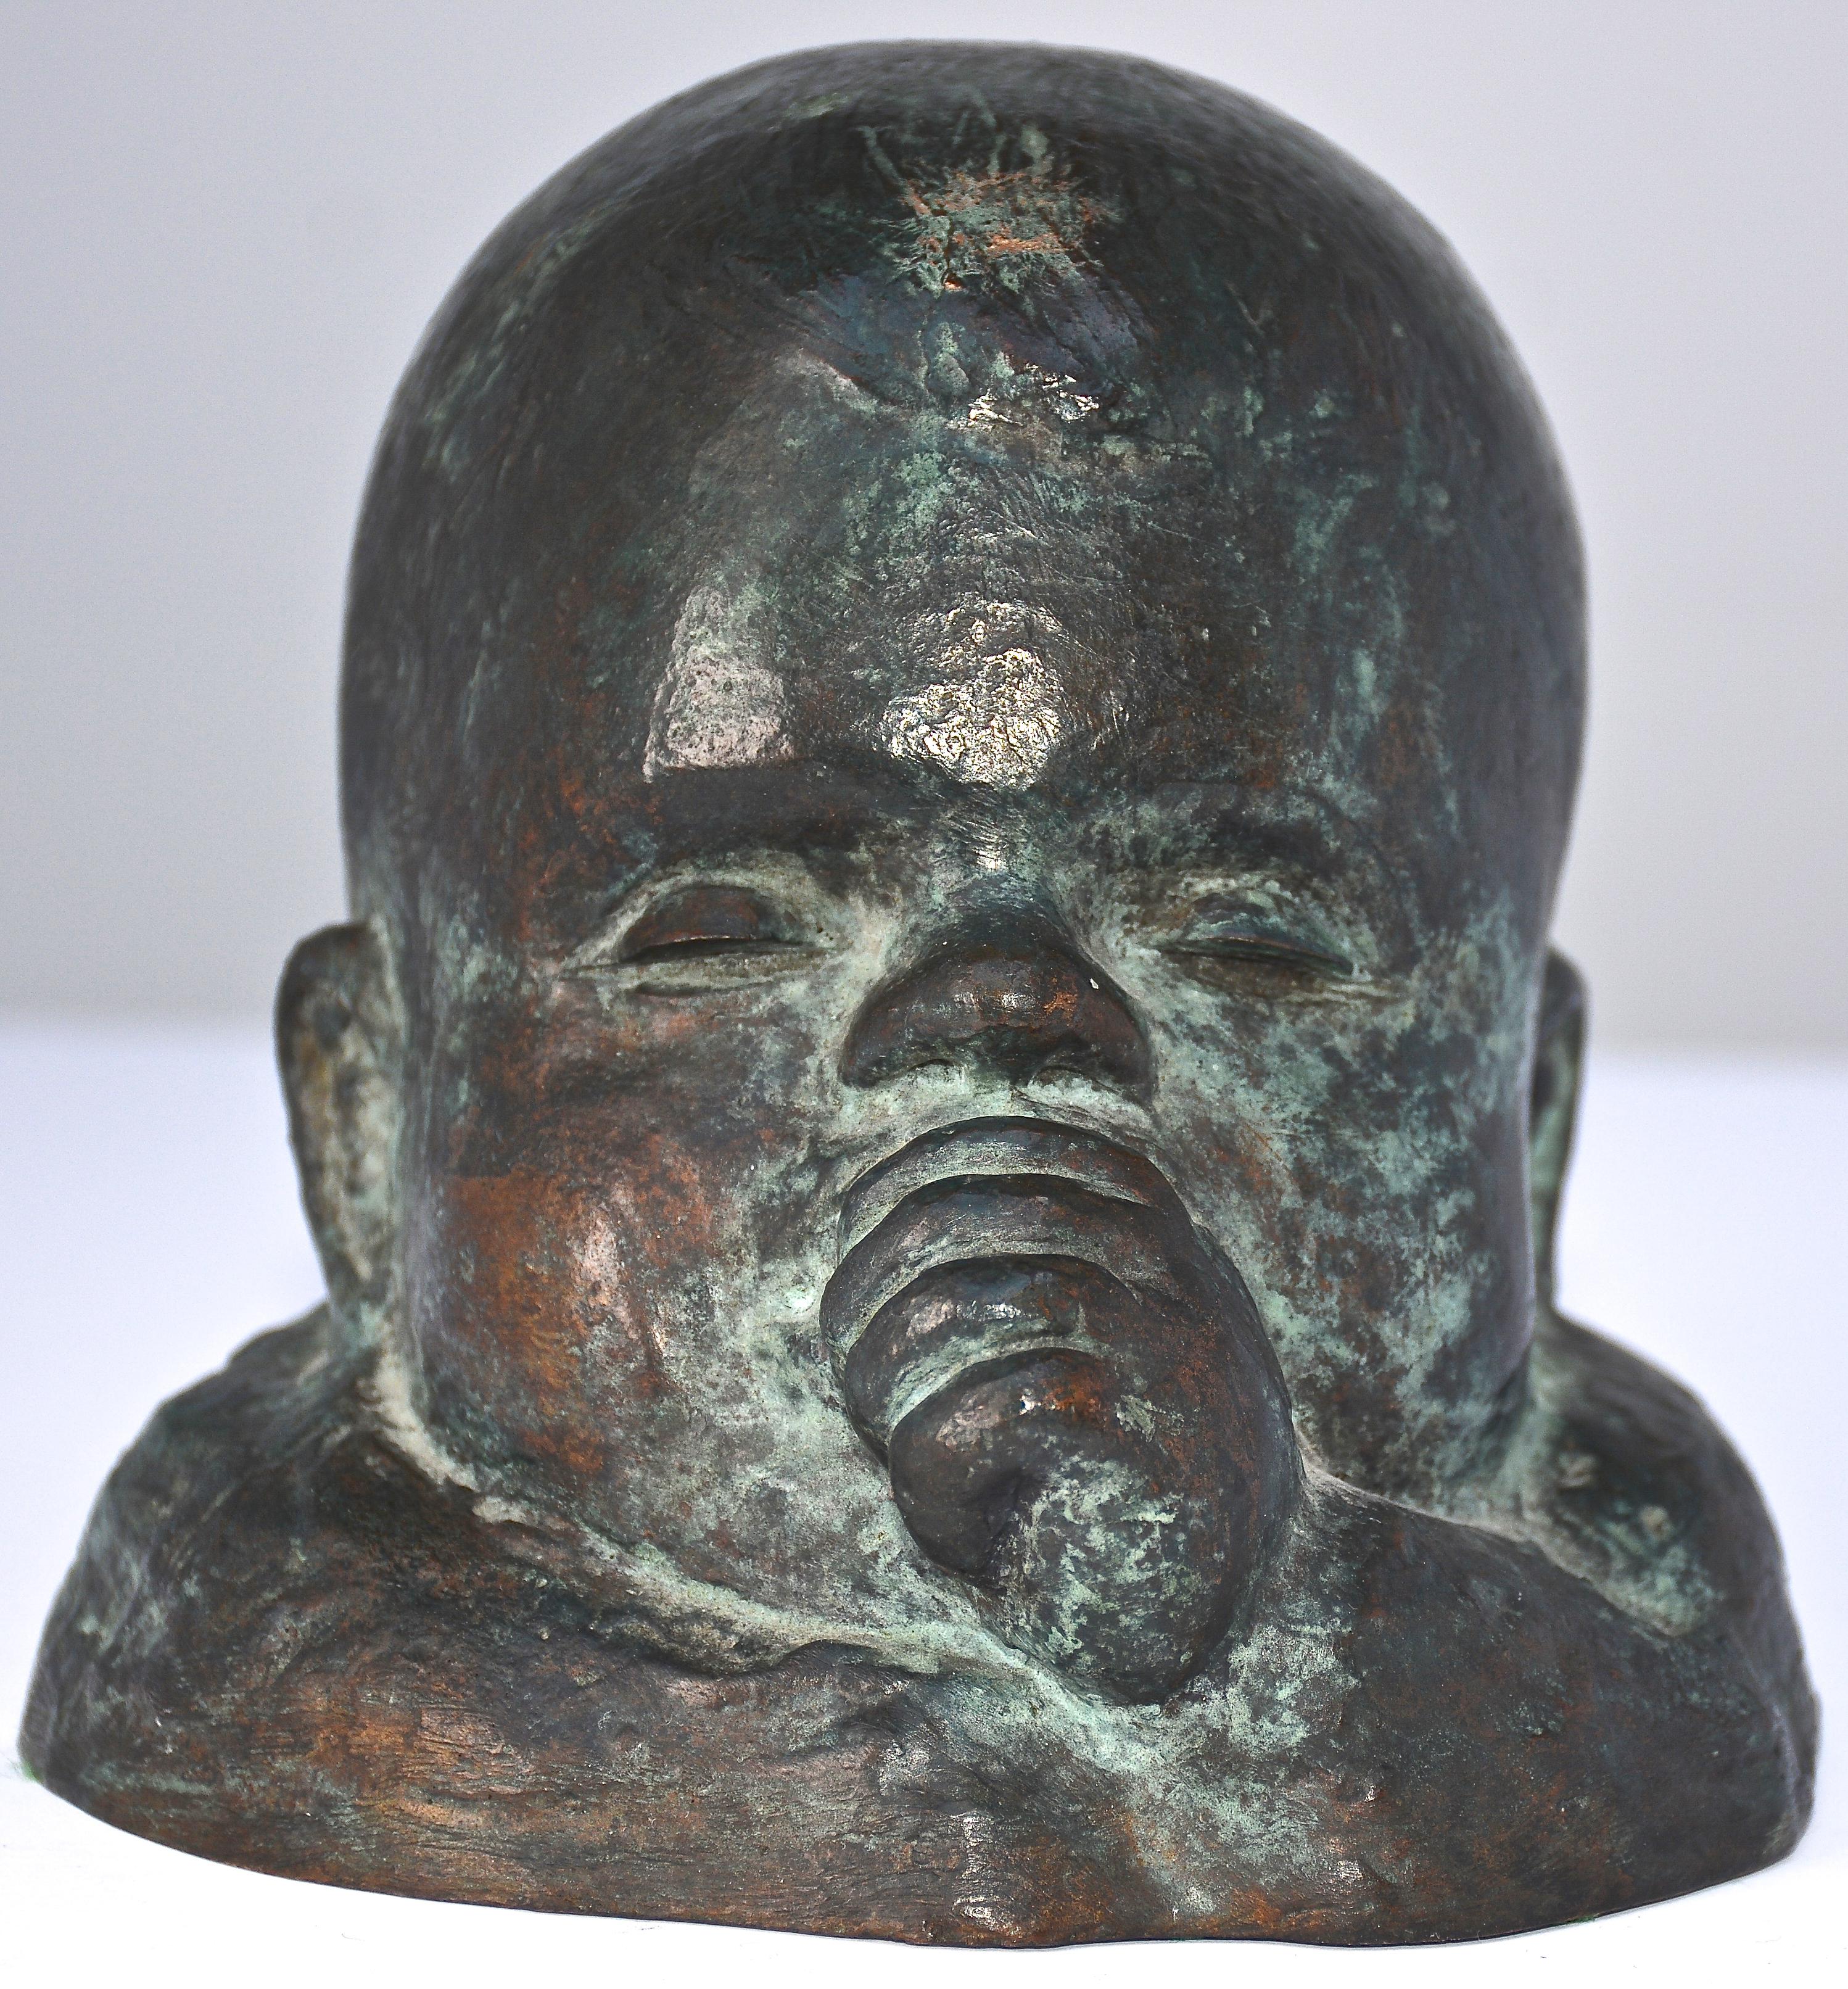 Sculpture en bronze sans titre, signée par l'artiste mexicain Victor Salmones (1937-1989), issue d'une édition de 10 exemplaires. Numéroté 1 sur 10. Signature "Victor Salmones. 1/10"  dans la distribution.  En excellent état d'origine.

Victor